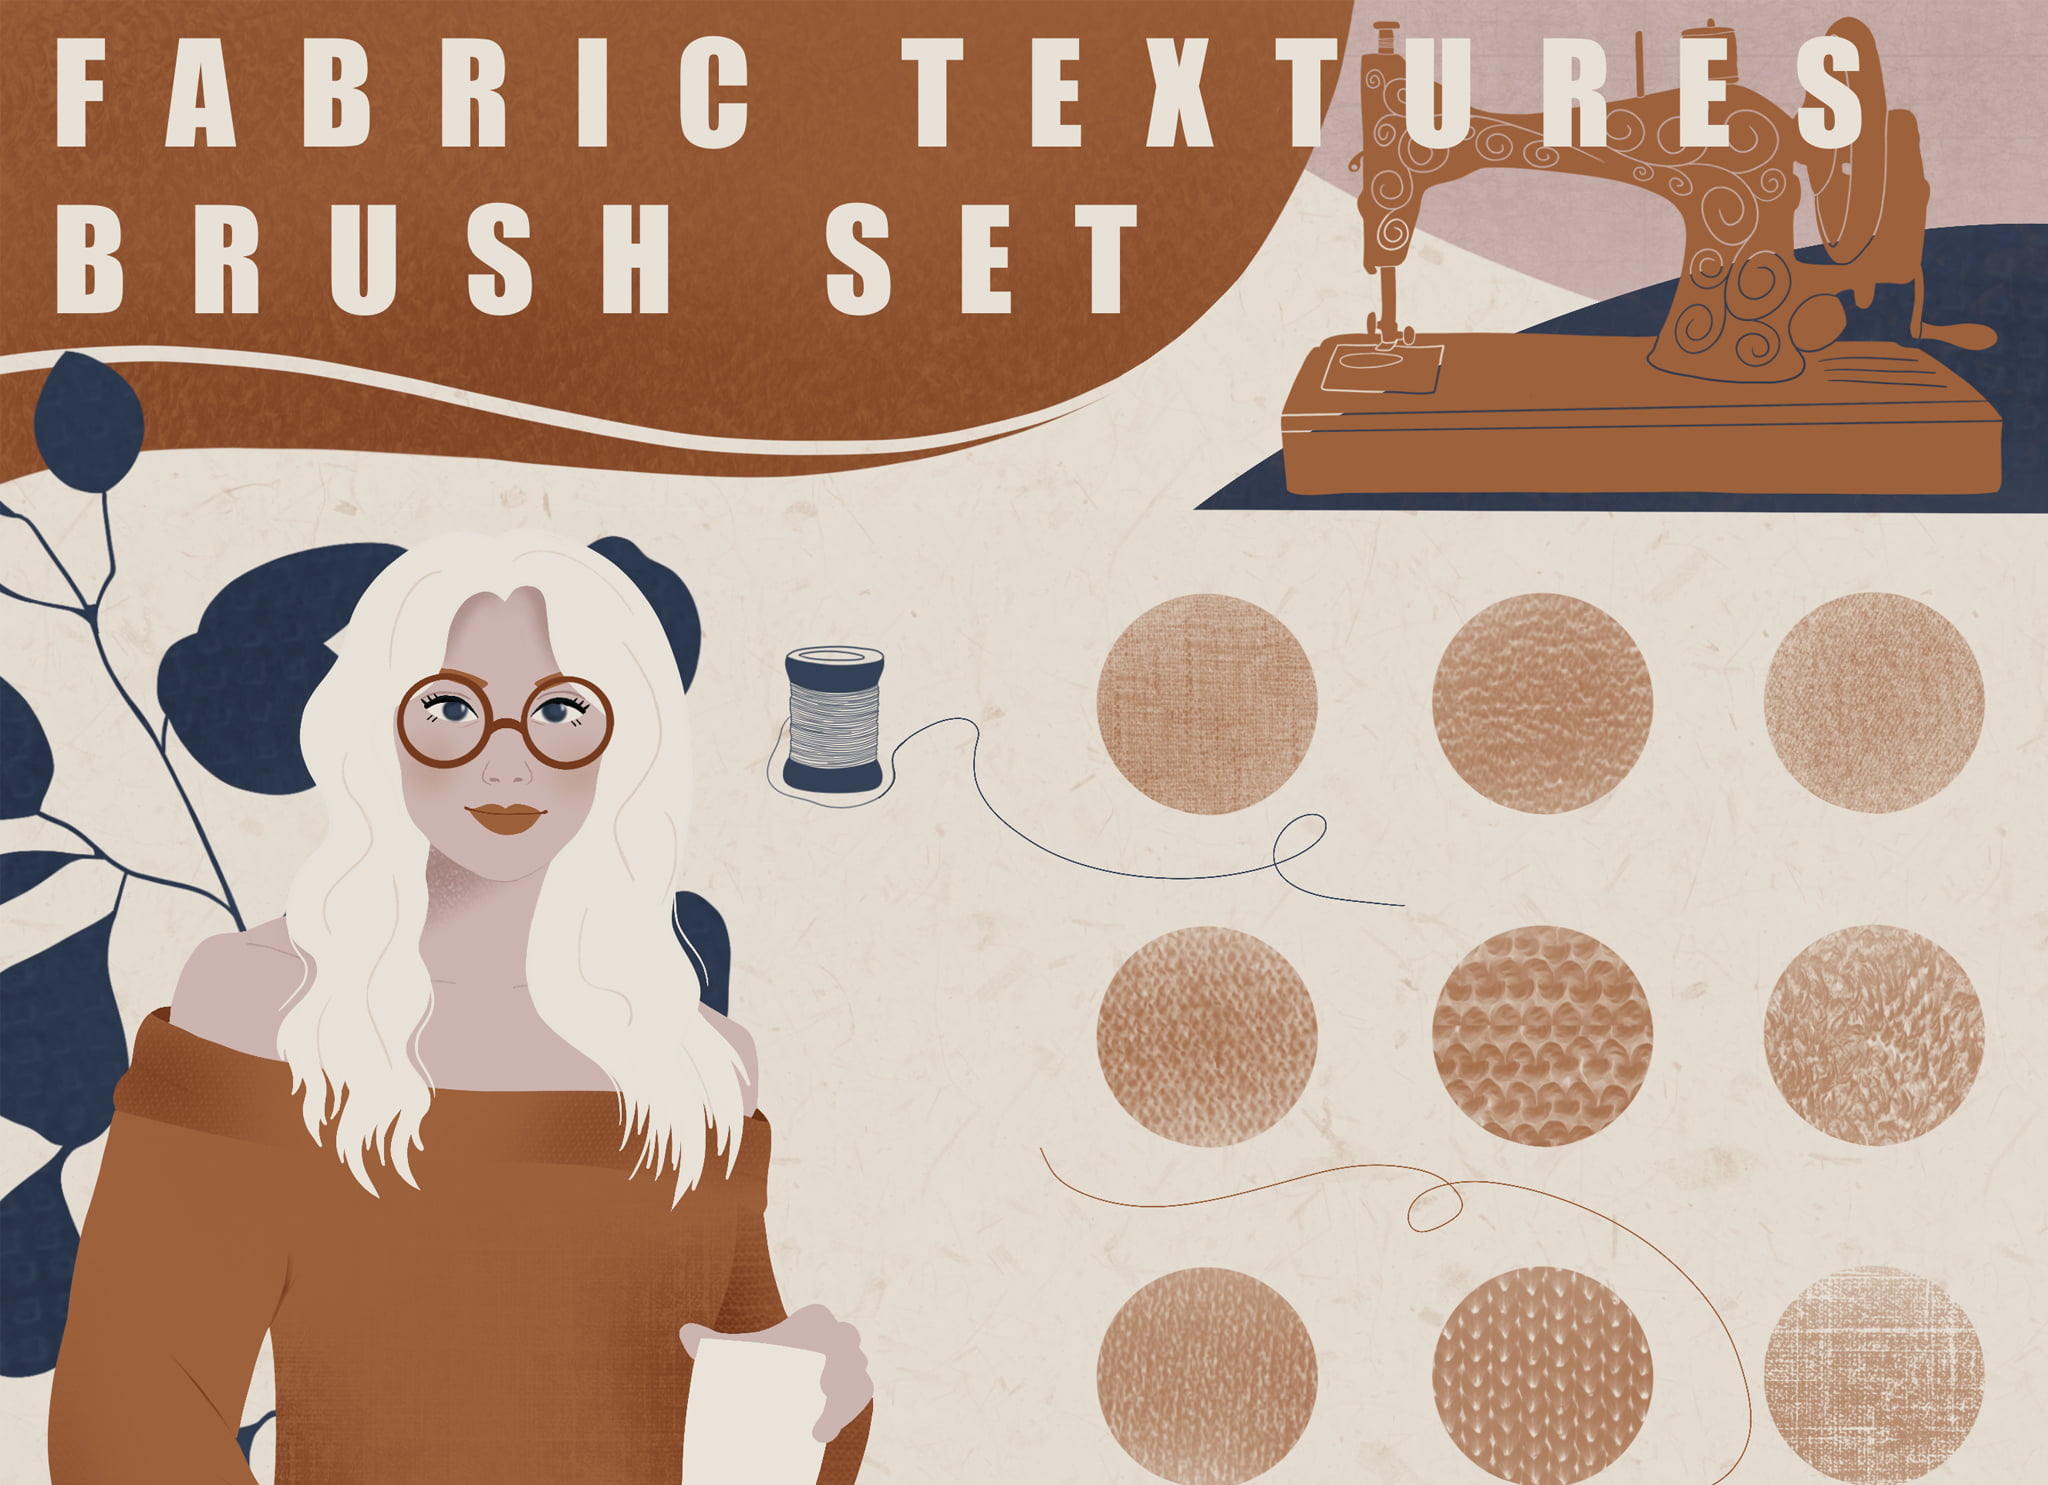 procreate fabric brushes - free